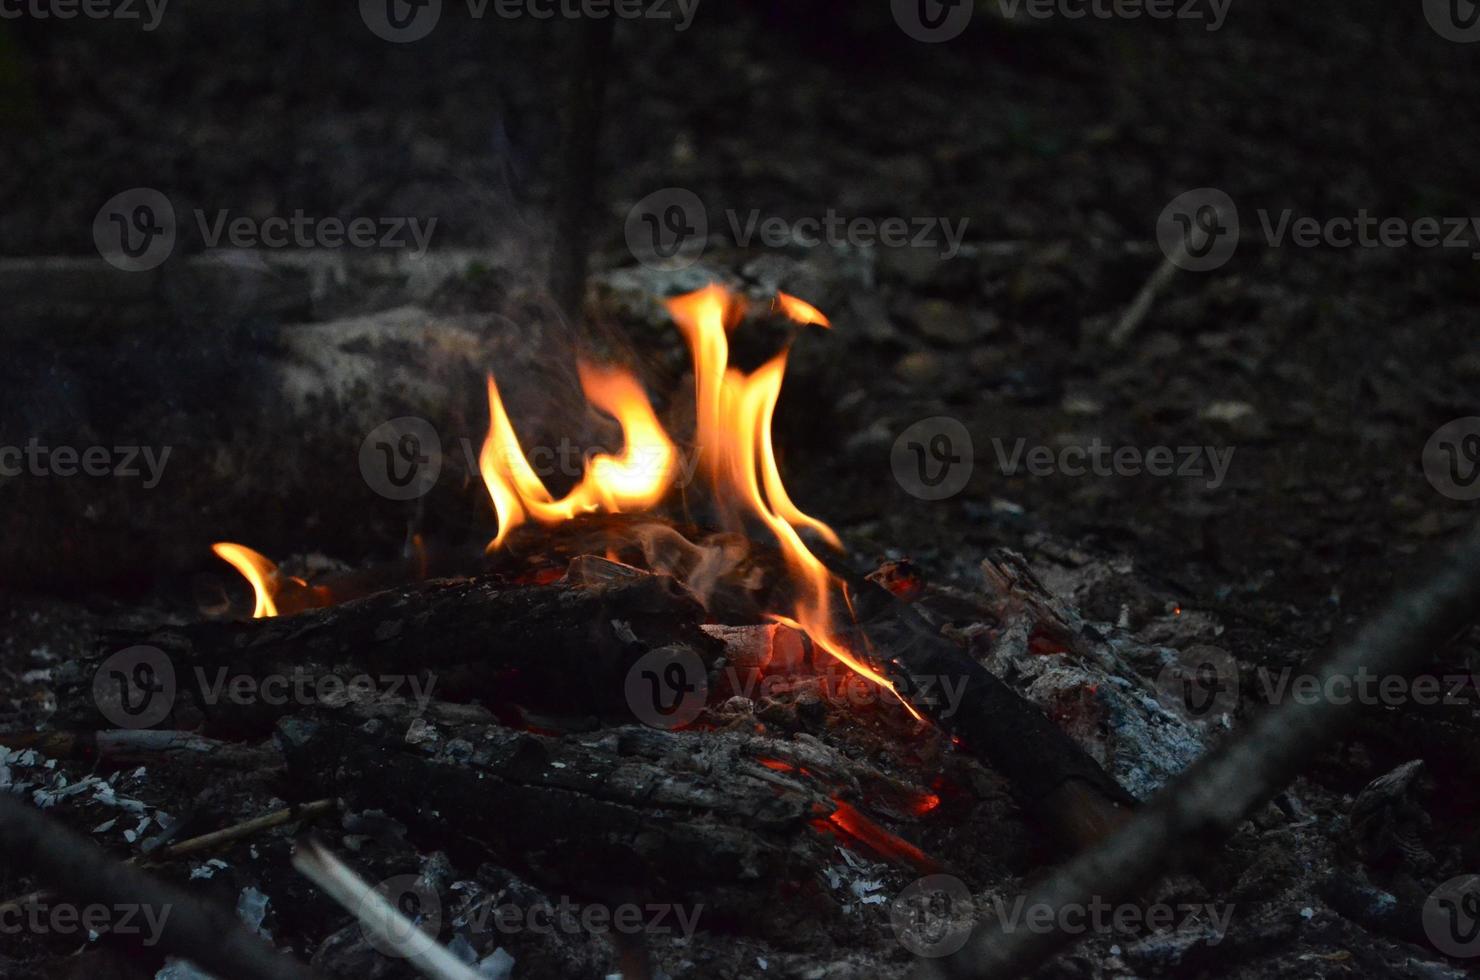 brinnande trä loggar i de natt. suddig ljus. ljus röd brand. natur bild. foto